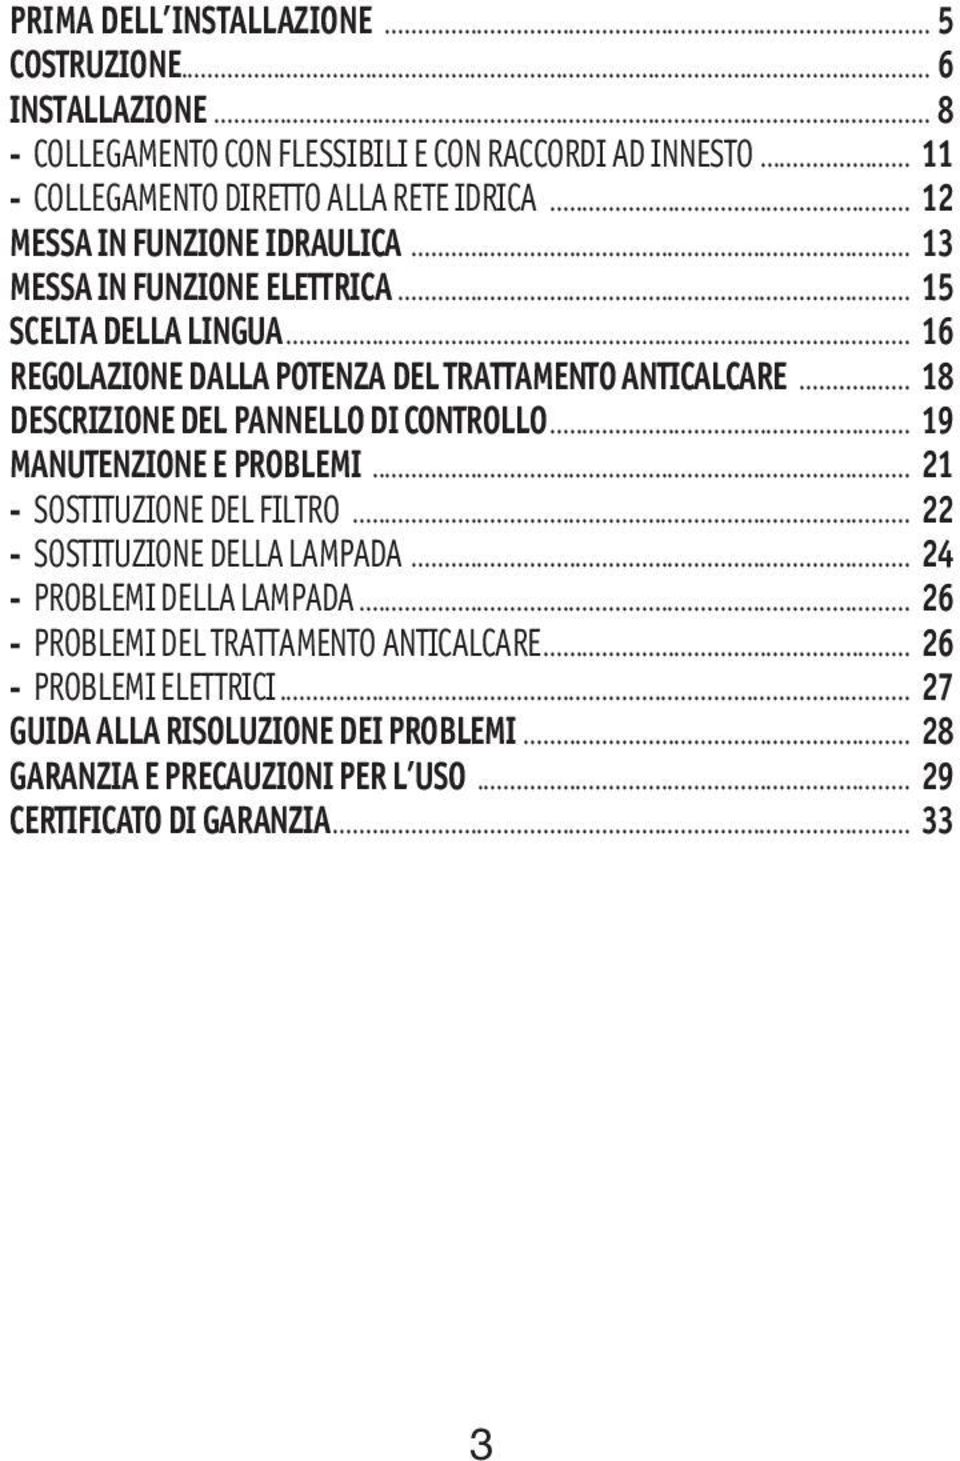 DESCRIZIONE DEL PANNELLO DI CONTROLLO... 19 MANUTENZIONE E PROBLEMI... 21 - SOSTITUZIONE DEL FILTRO... 22 - SOSTITUZIONE DELLA LAMPADA... 24 - PROBLEMI DELLA LAMPADA.